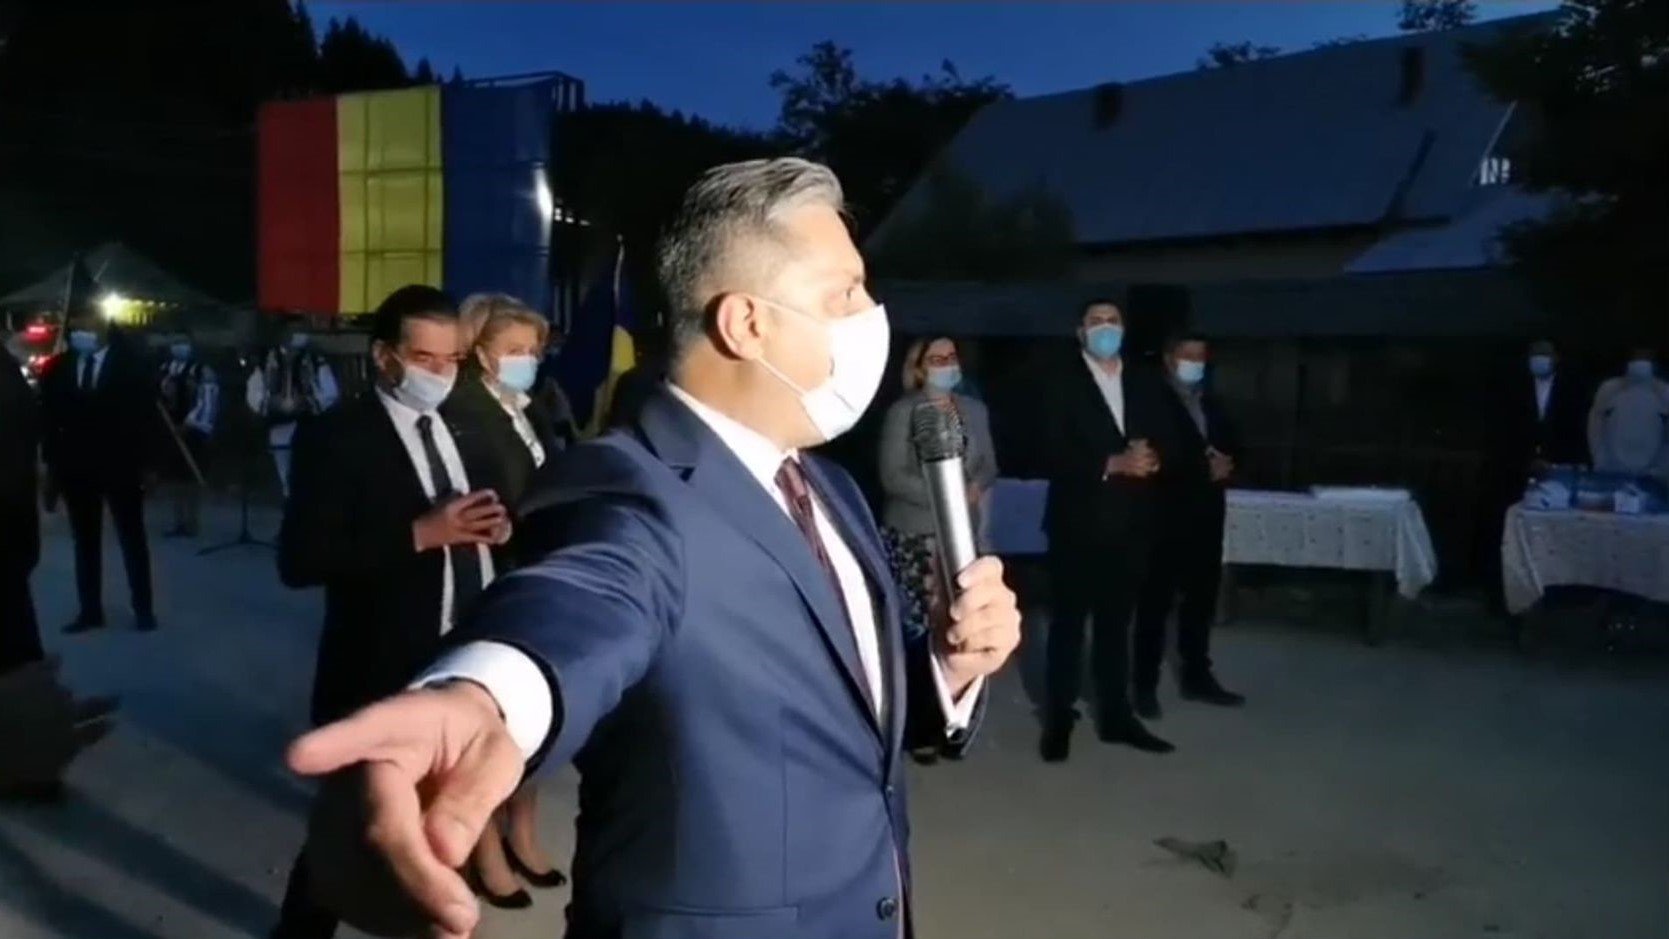  VIDEO: Ludovic Orban, întâmpinat cu huiduieli în Neamț: Mincinoșii! Mincinoșii!